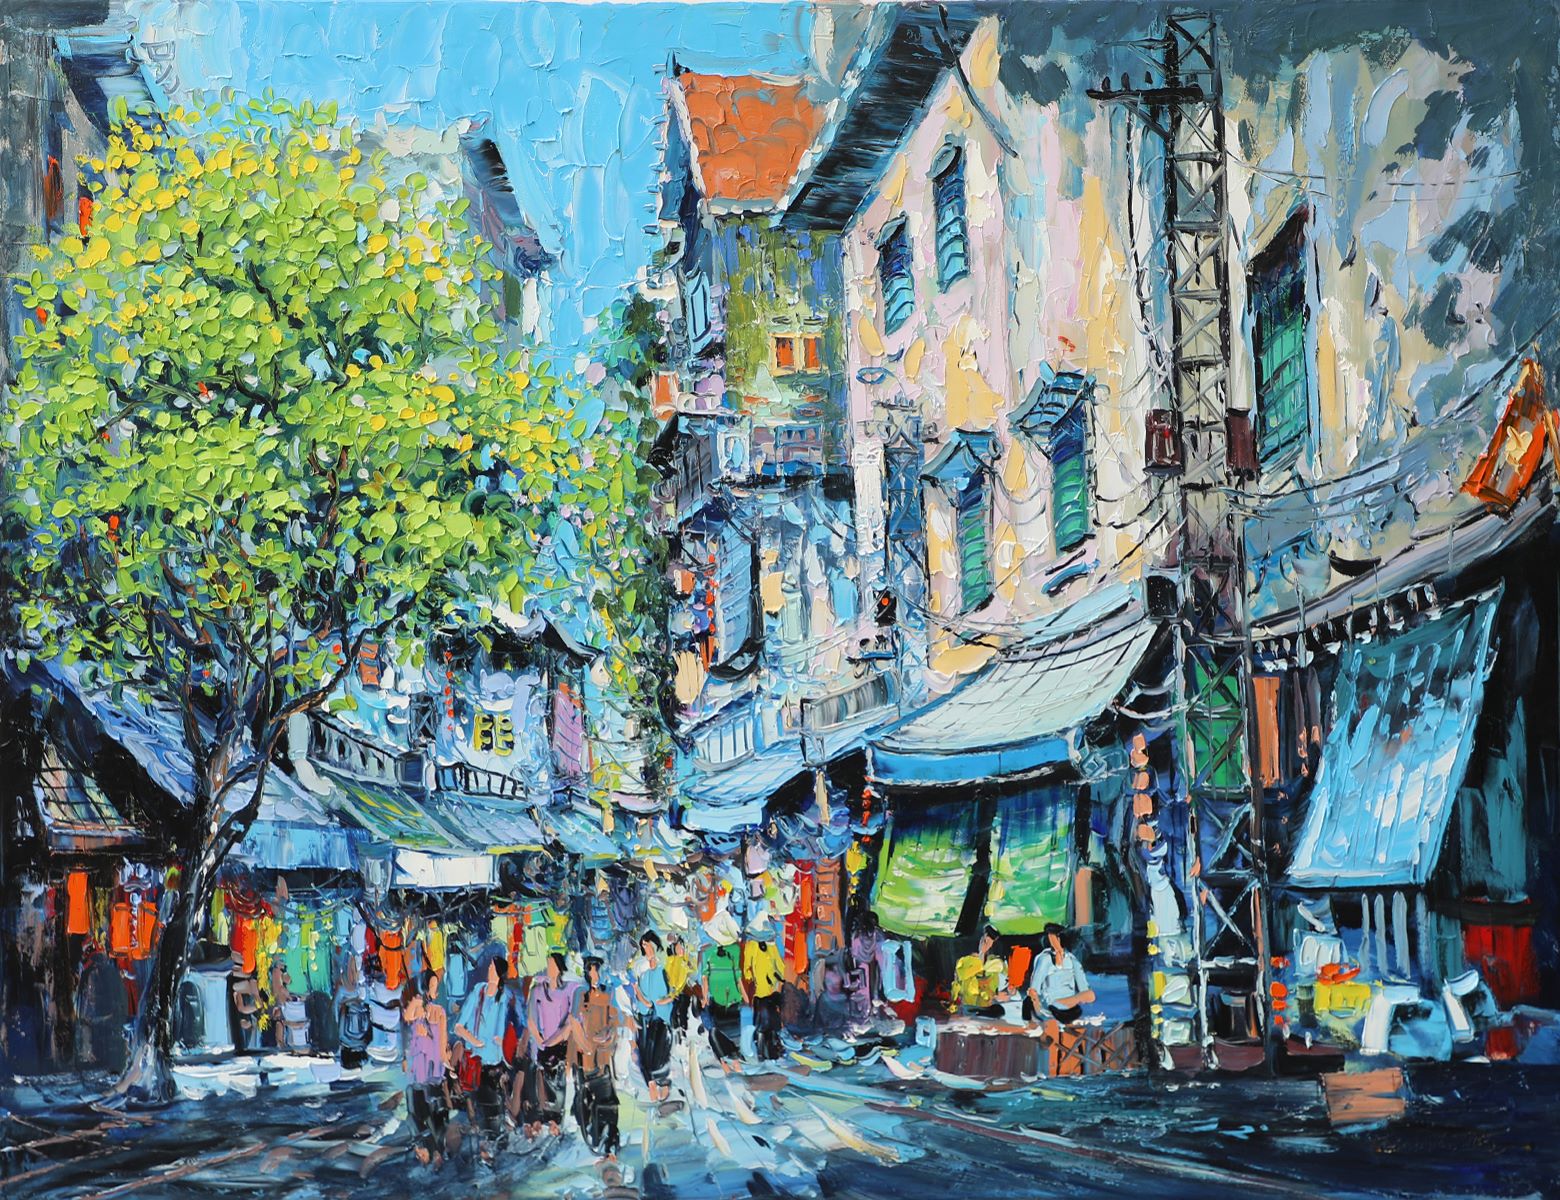 Hanoi Autumn III - Vietnamese Oil Painting by Artist Giap Van Tuan